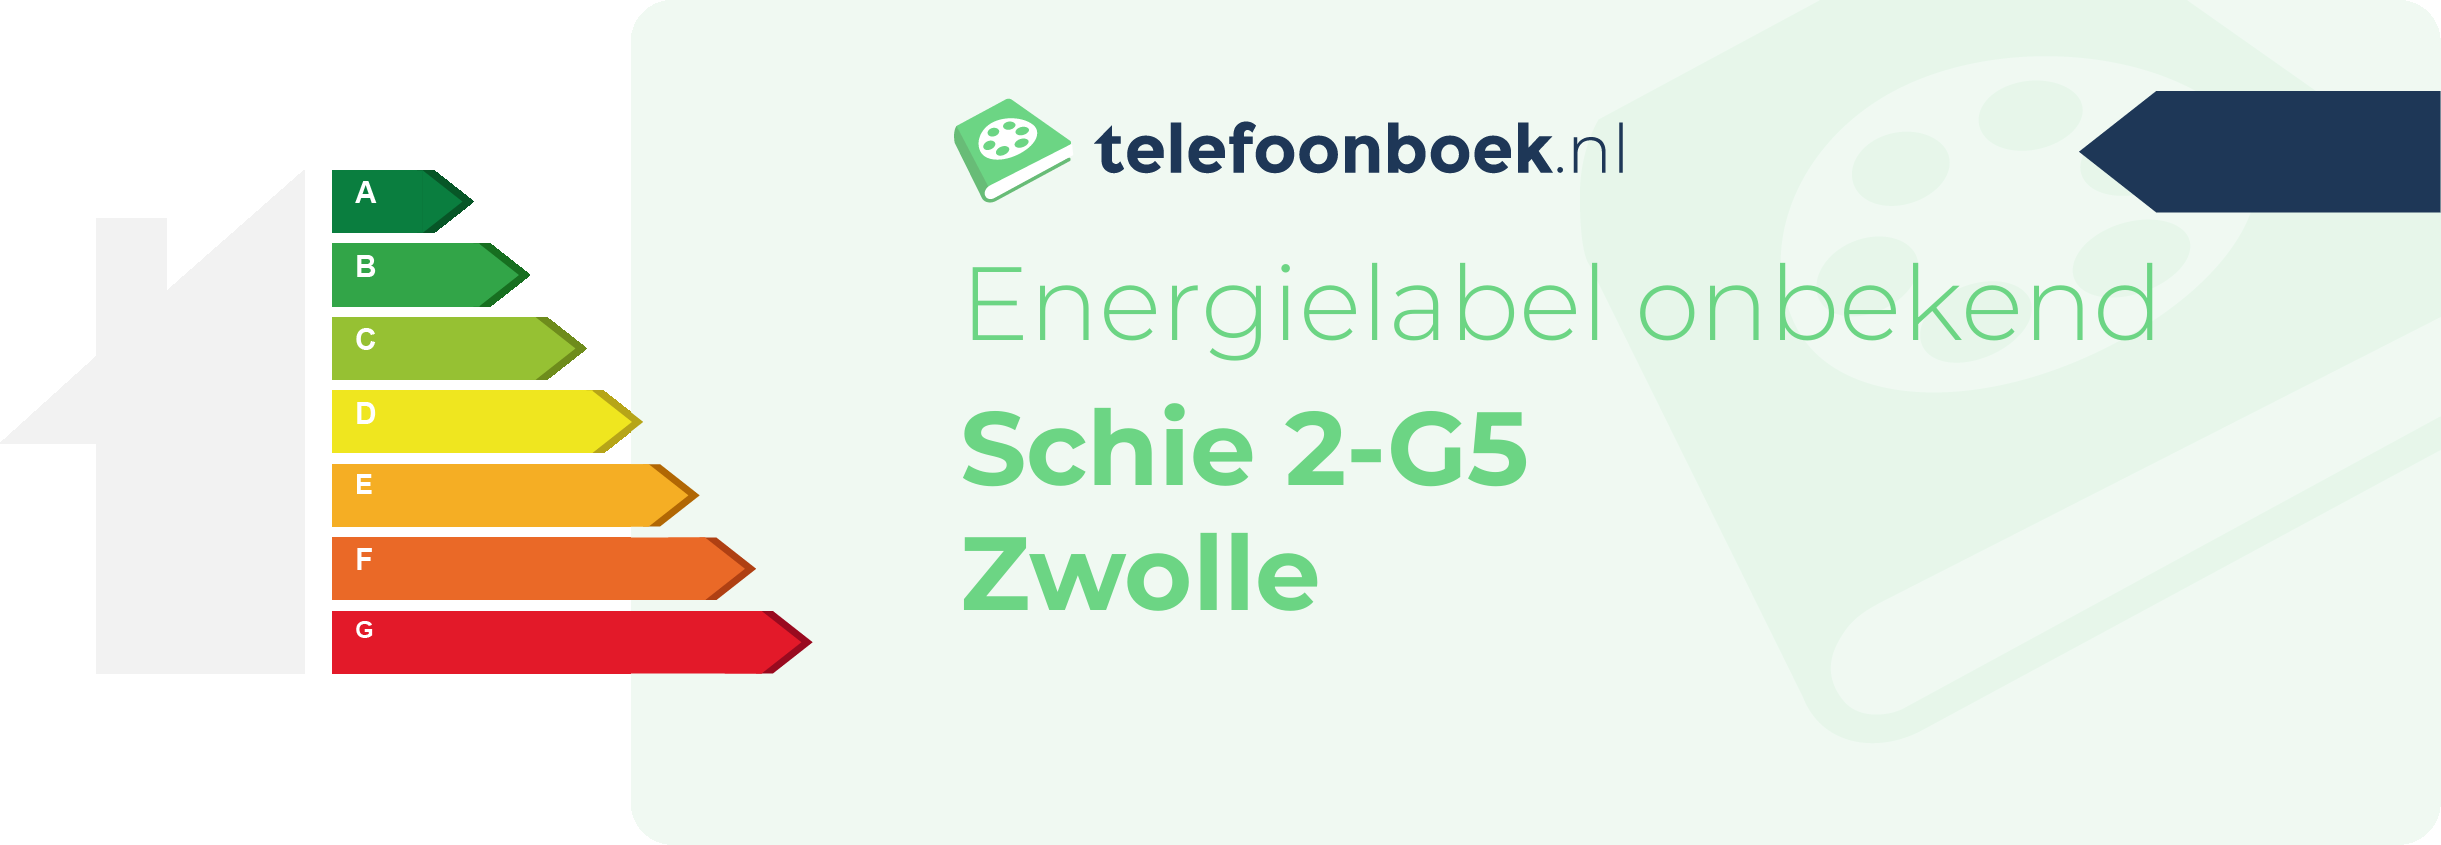 Energielabel Schie 2-G5 Zwolle